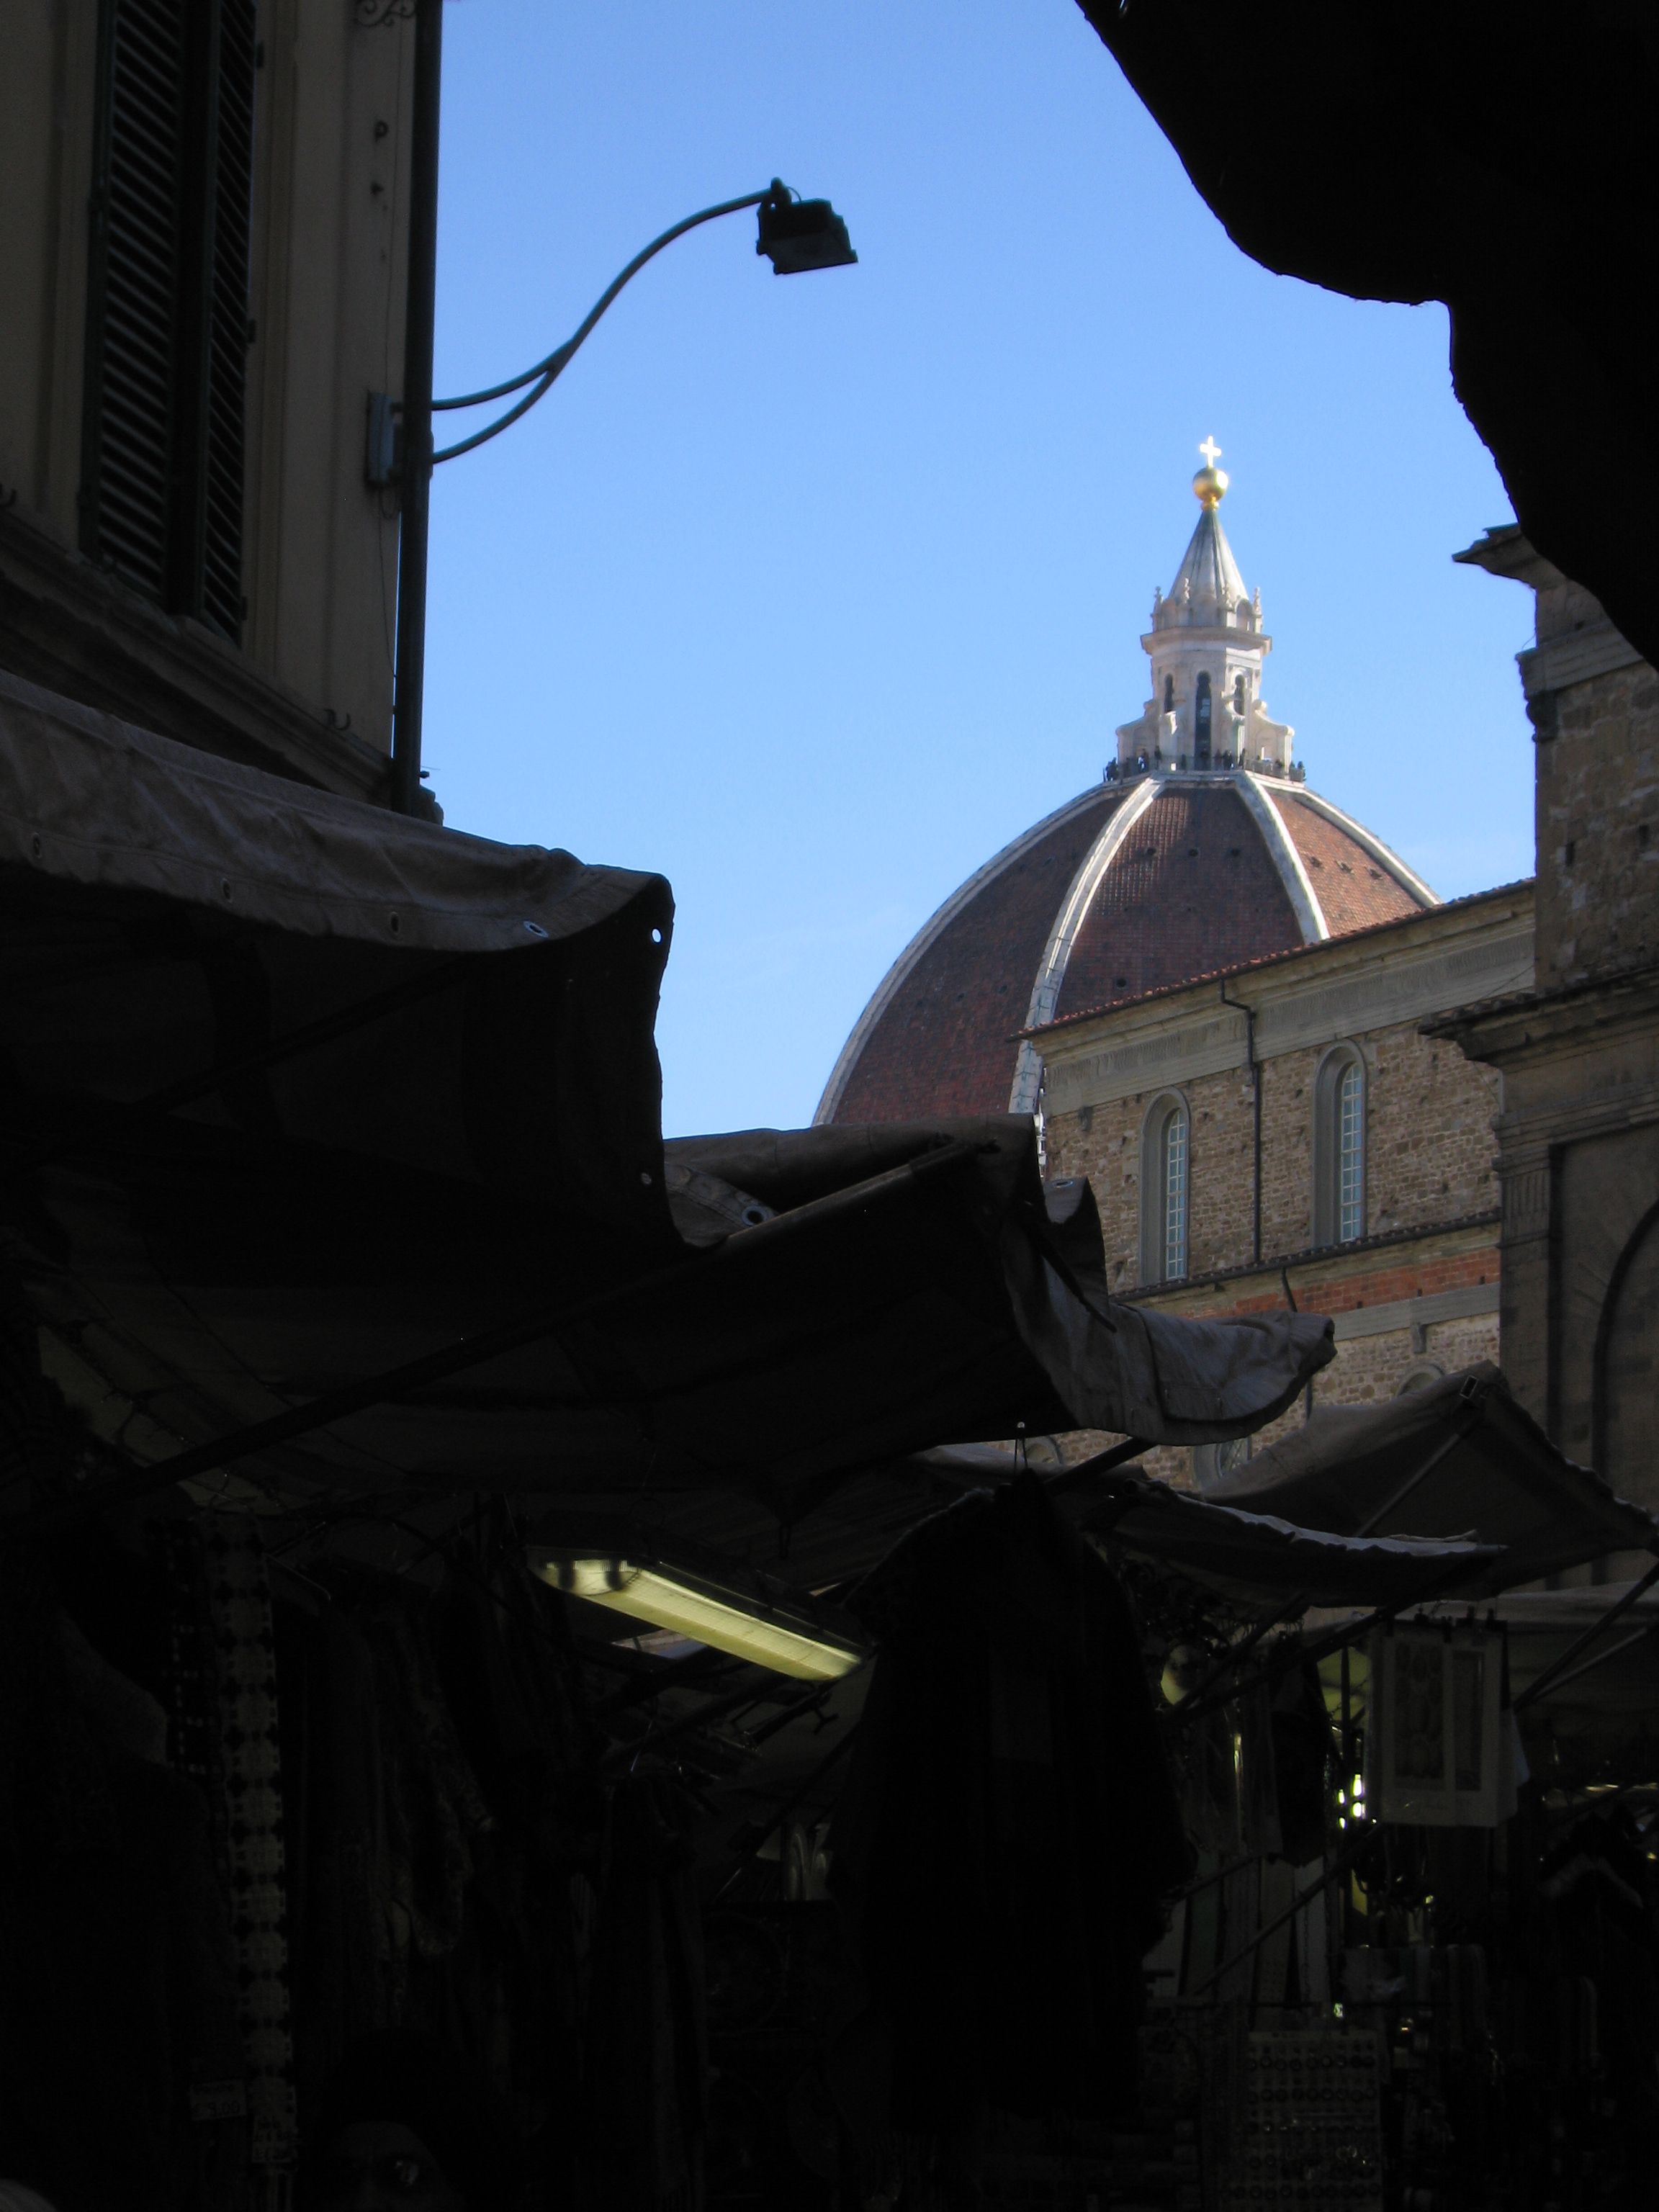 Kuppel des Doms von Florenz — Der Duomo